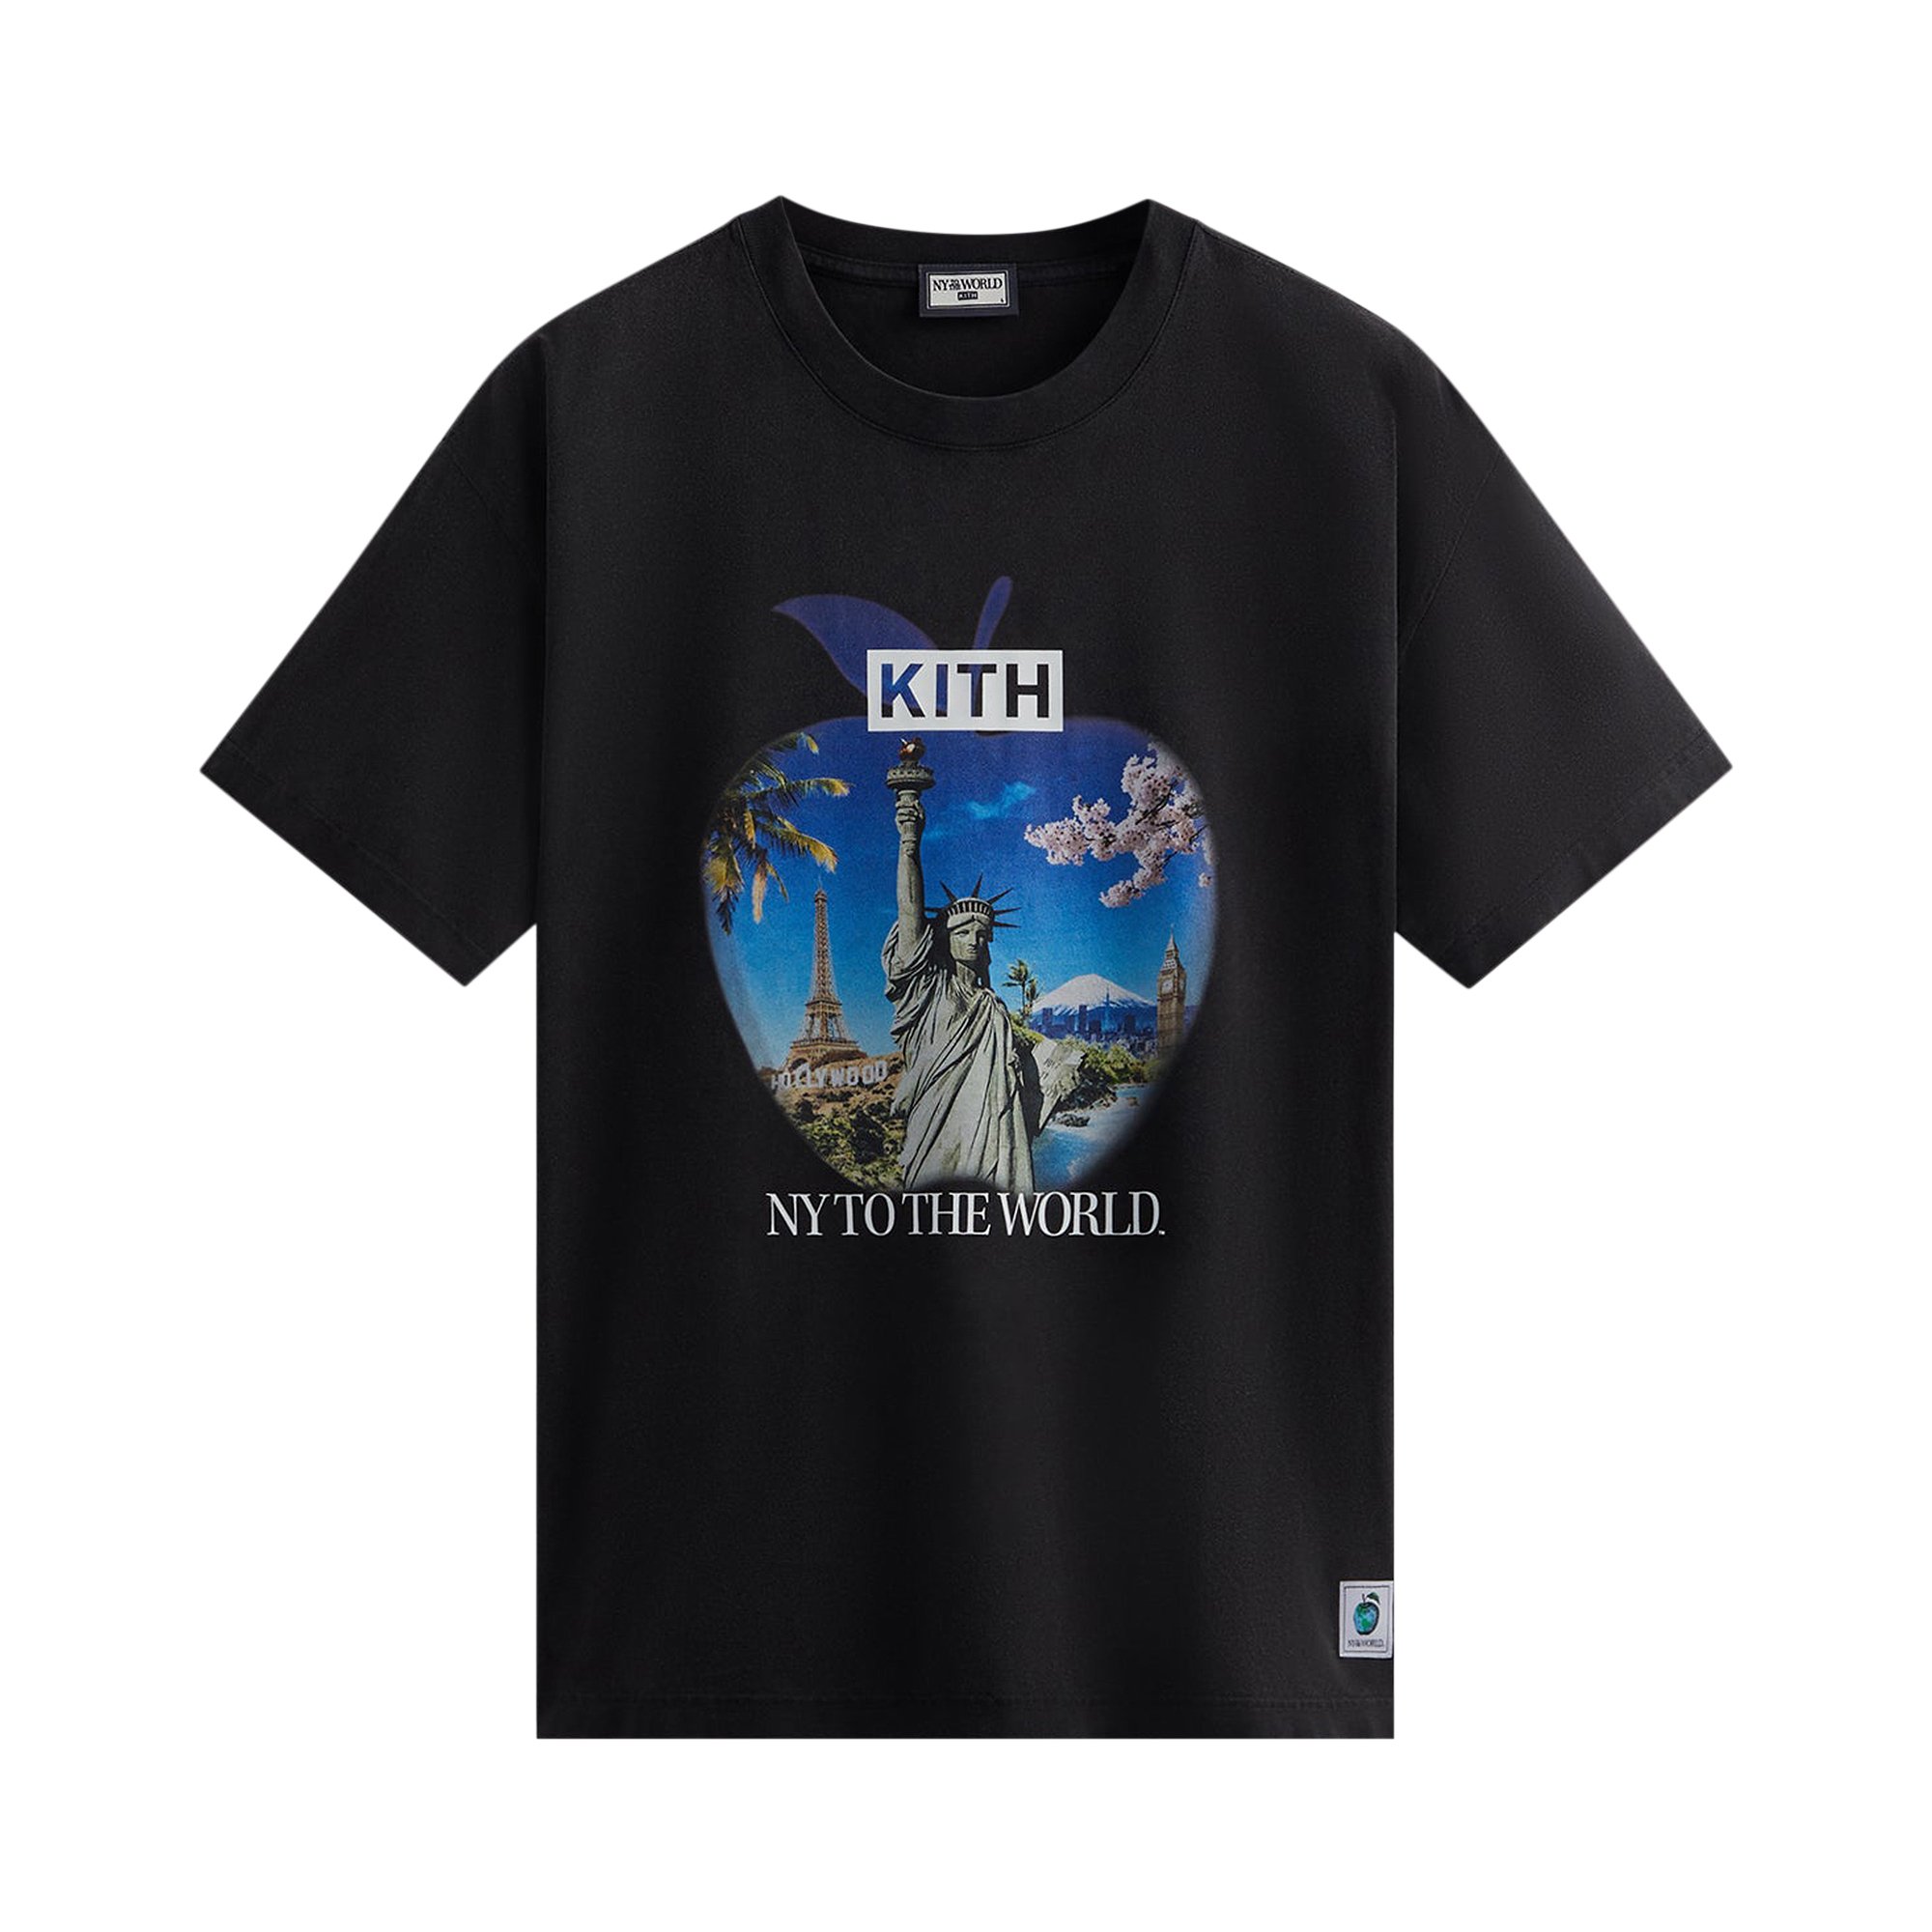 Сувенирная винтажная футболка Kith New York To The World, черная